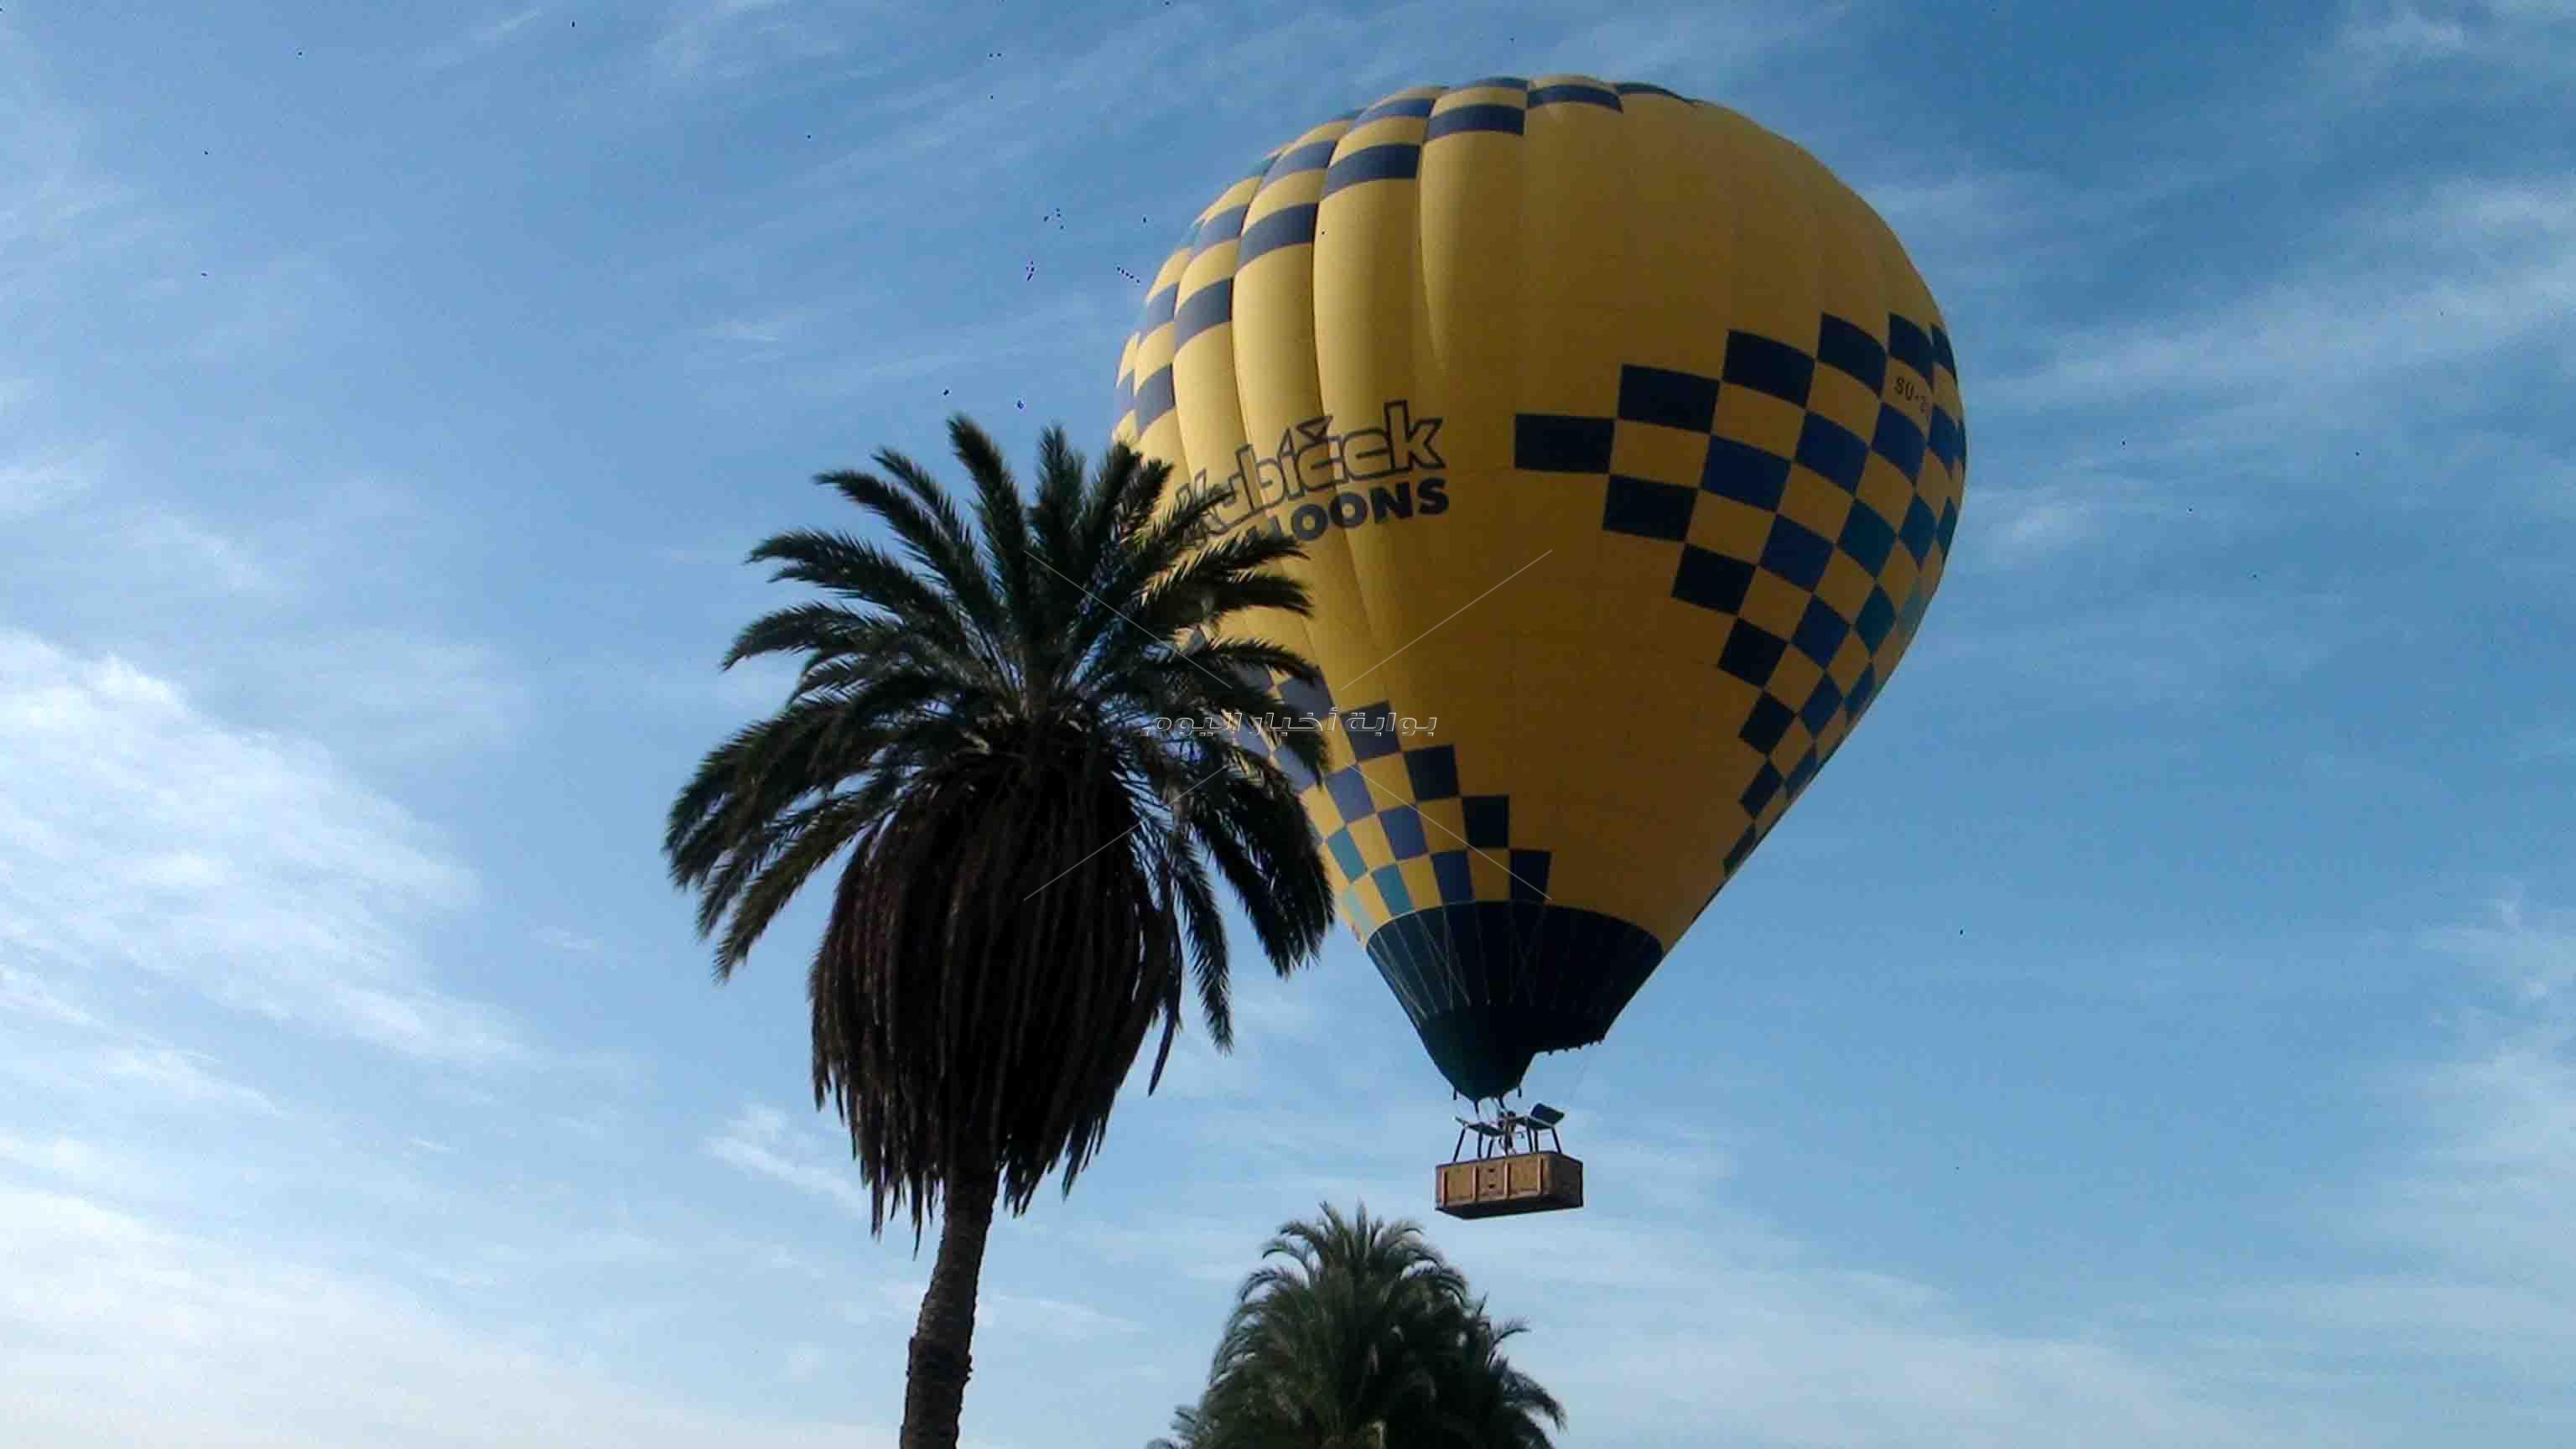   توقف حركة البالون السياحى بالأقصر يهدد أصحاب الشركات وآلاف الأسر   